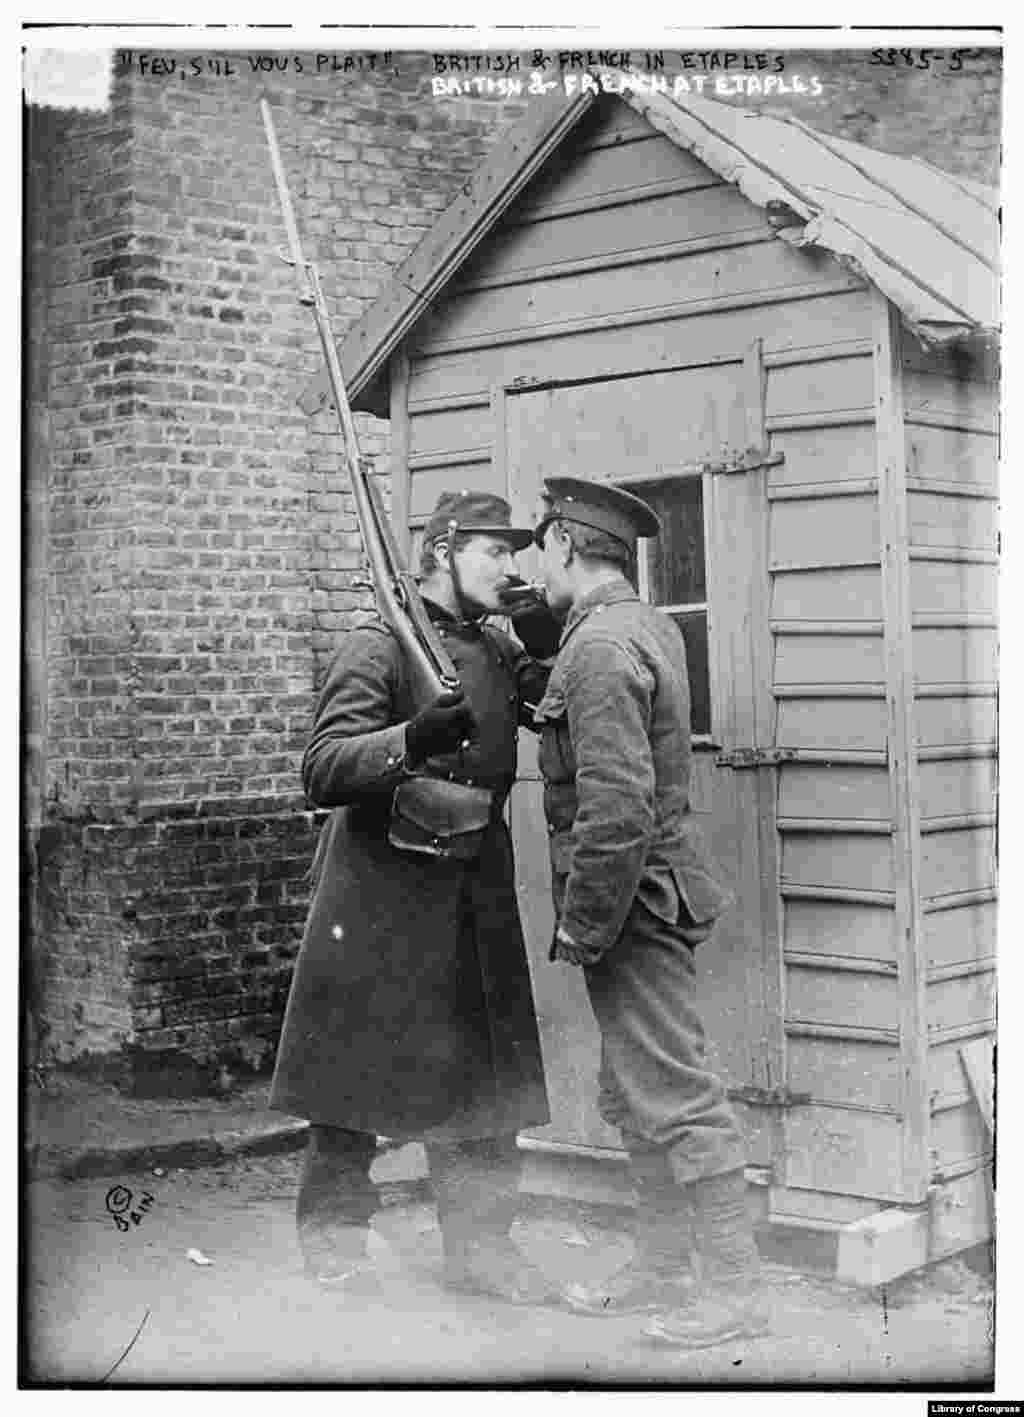 Britanski i francuski vojnik pale cigaretu na Etaplesu u sjevernoj Francuskoj na početku Prvog svjetskog rata. Iako je izvor gripe koji je opustošio svijet u vremenu 1918.-1920. i dalje sporan, mnogi vjeruju da je pandemija započela upravo u ovom francuskom vojnom kampu.